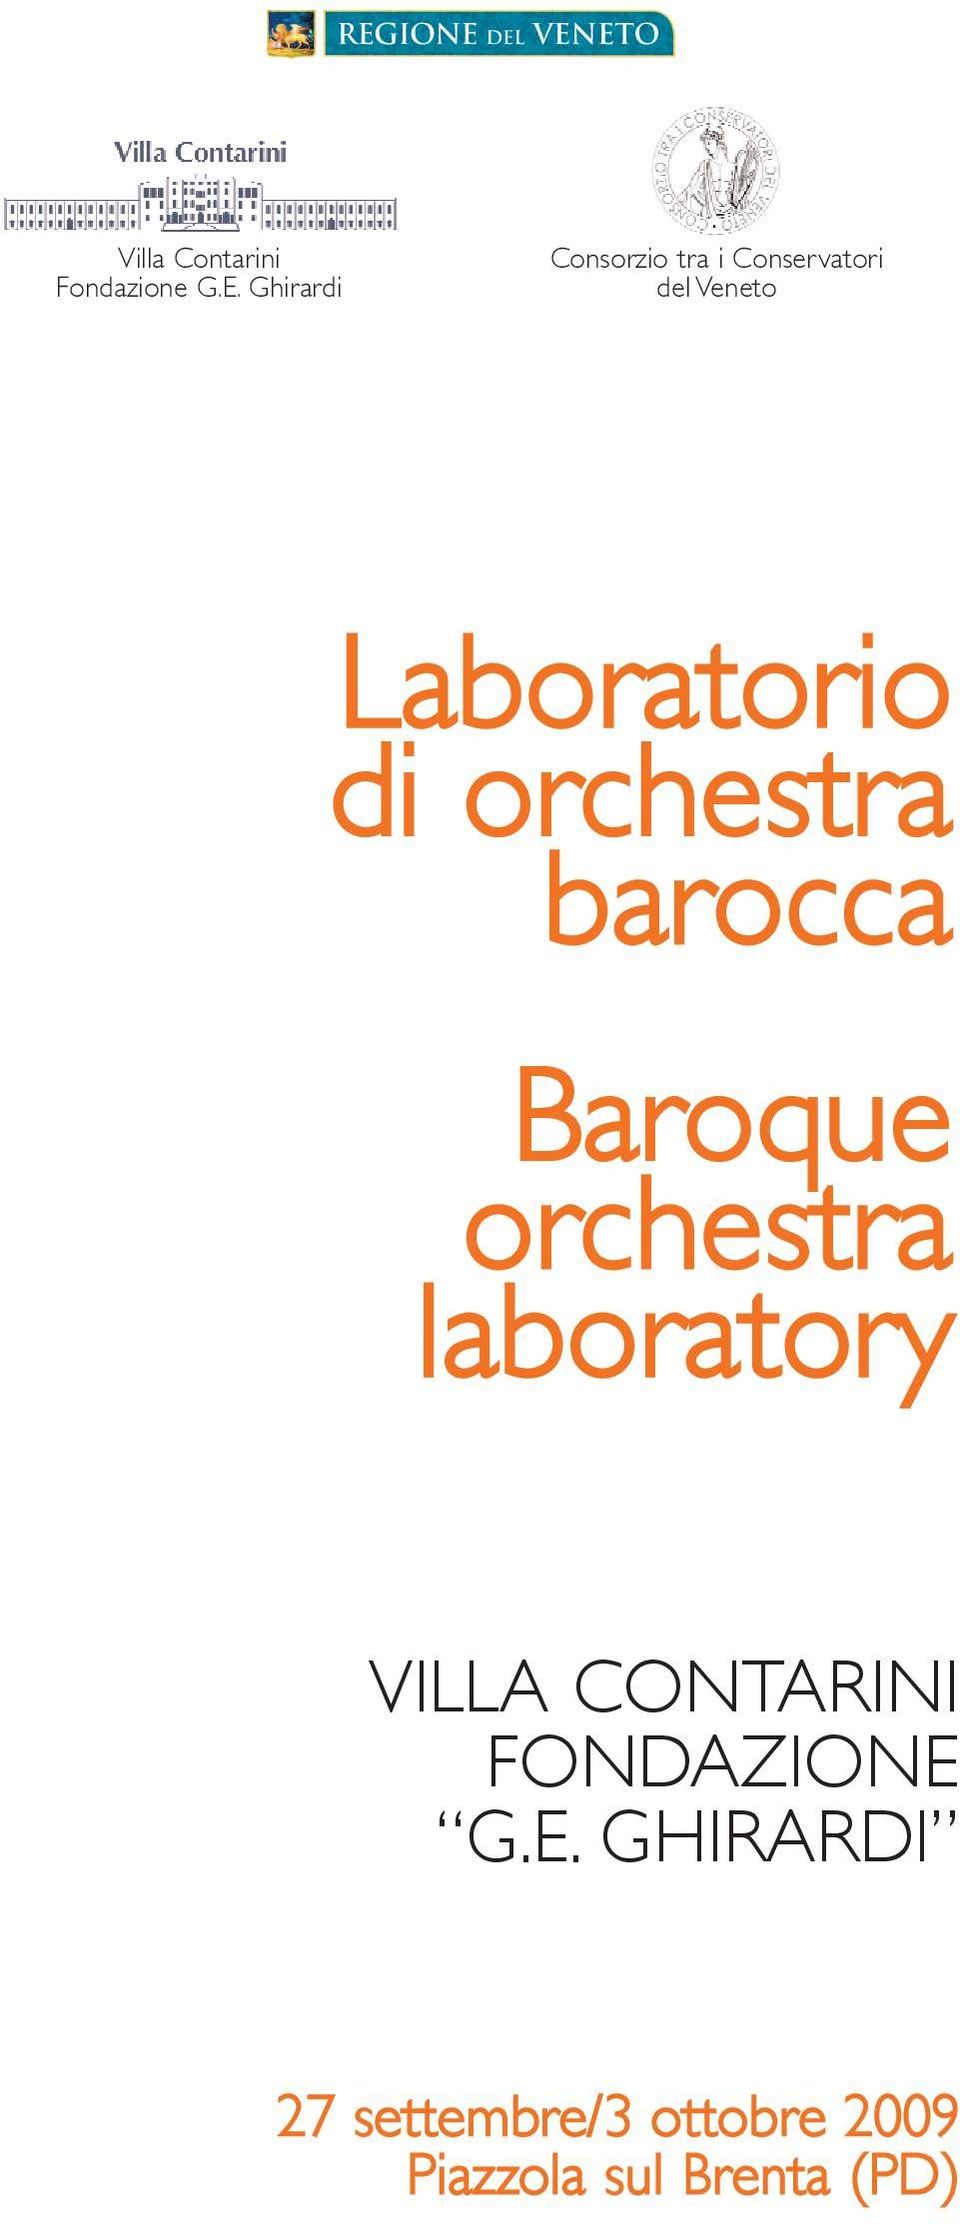 Laboratorio di orchestra barocca Baroque orchestra